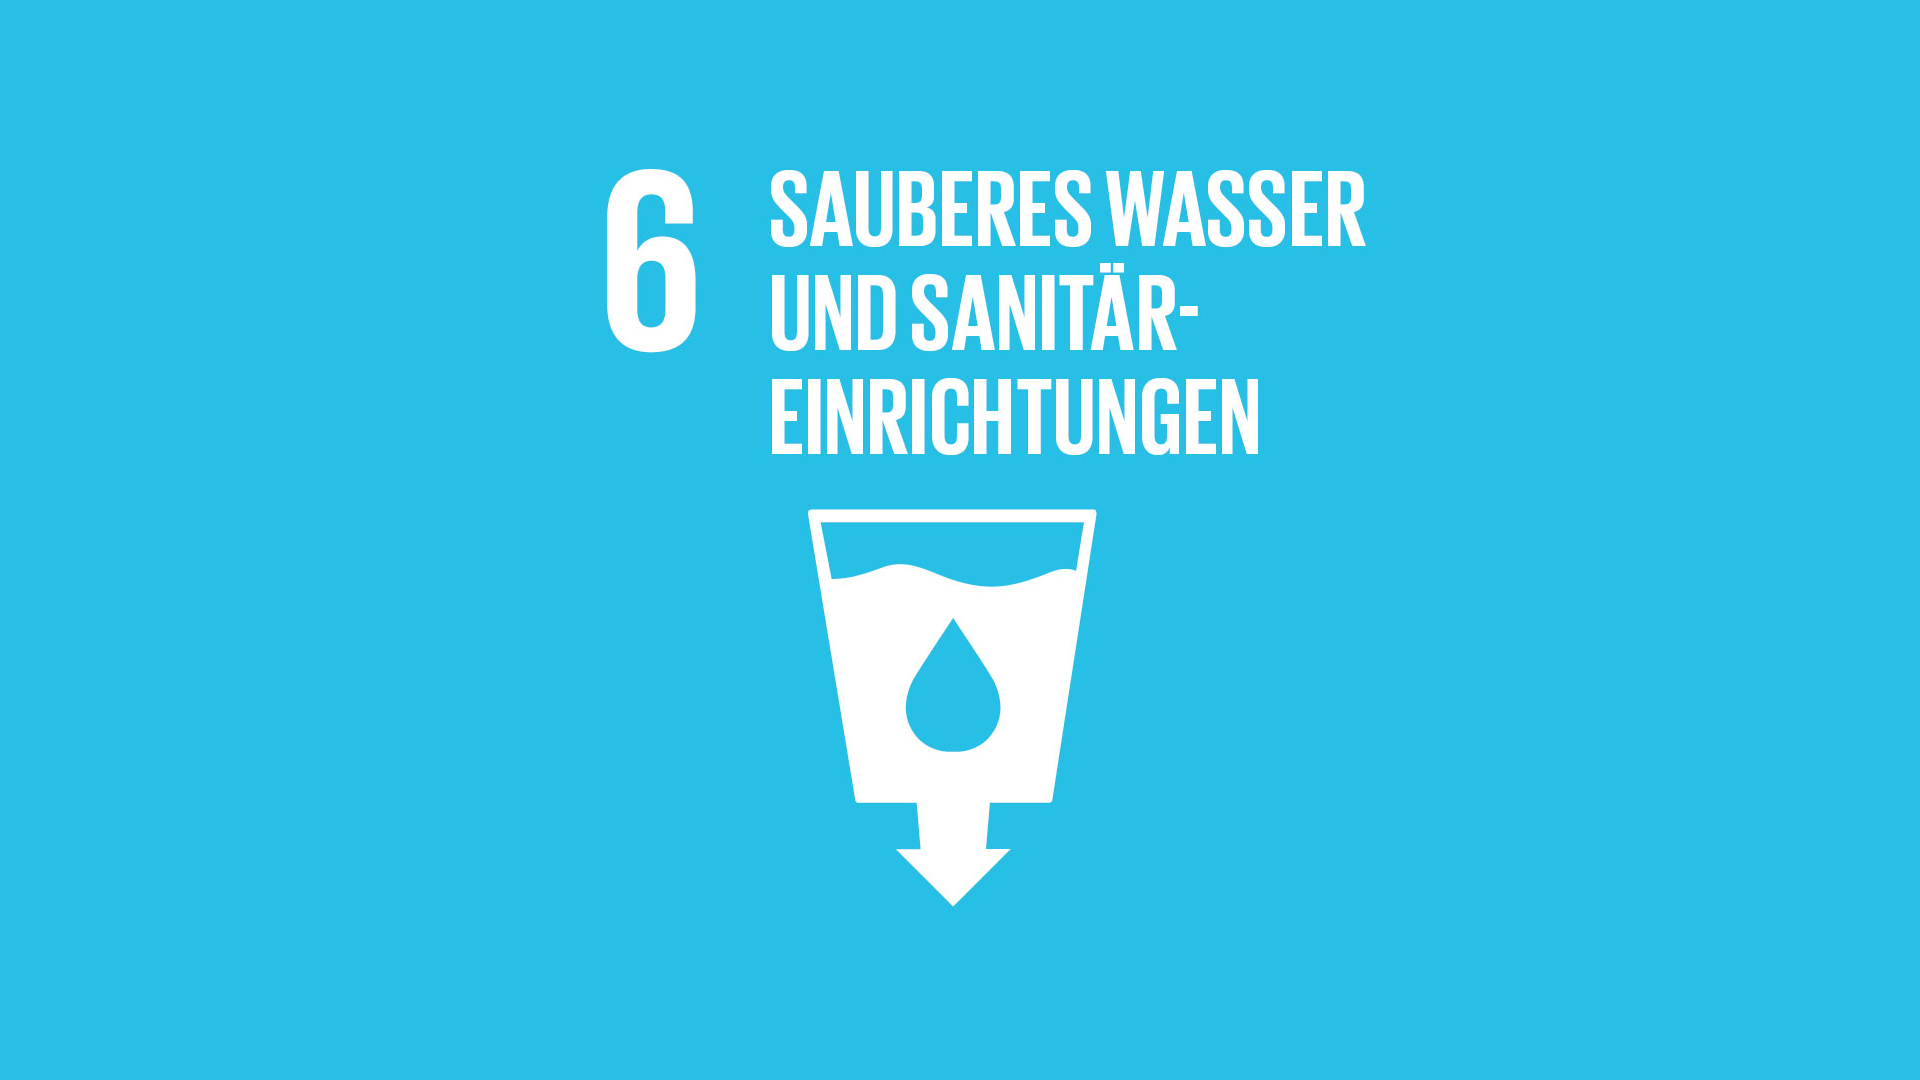 SDG 6: Sauberes Wasser und Sanitäreinrichtungen